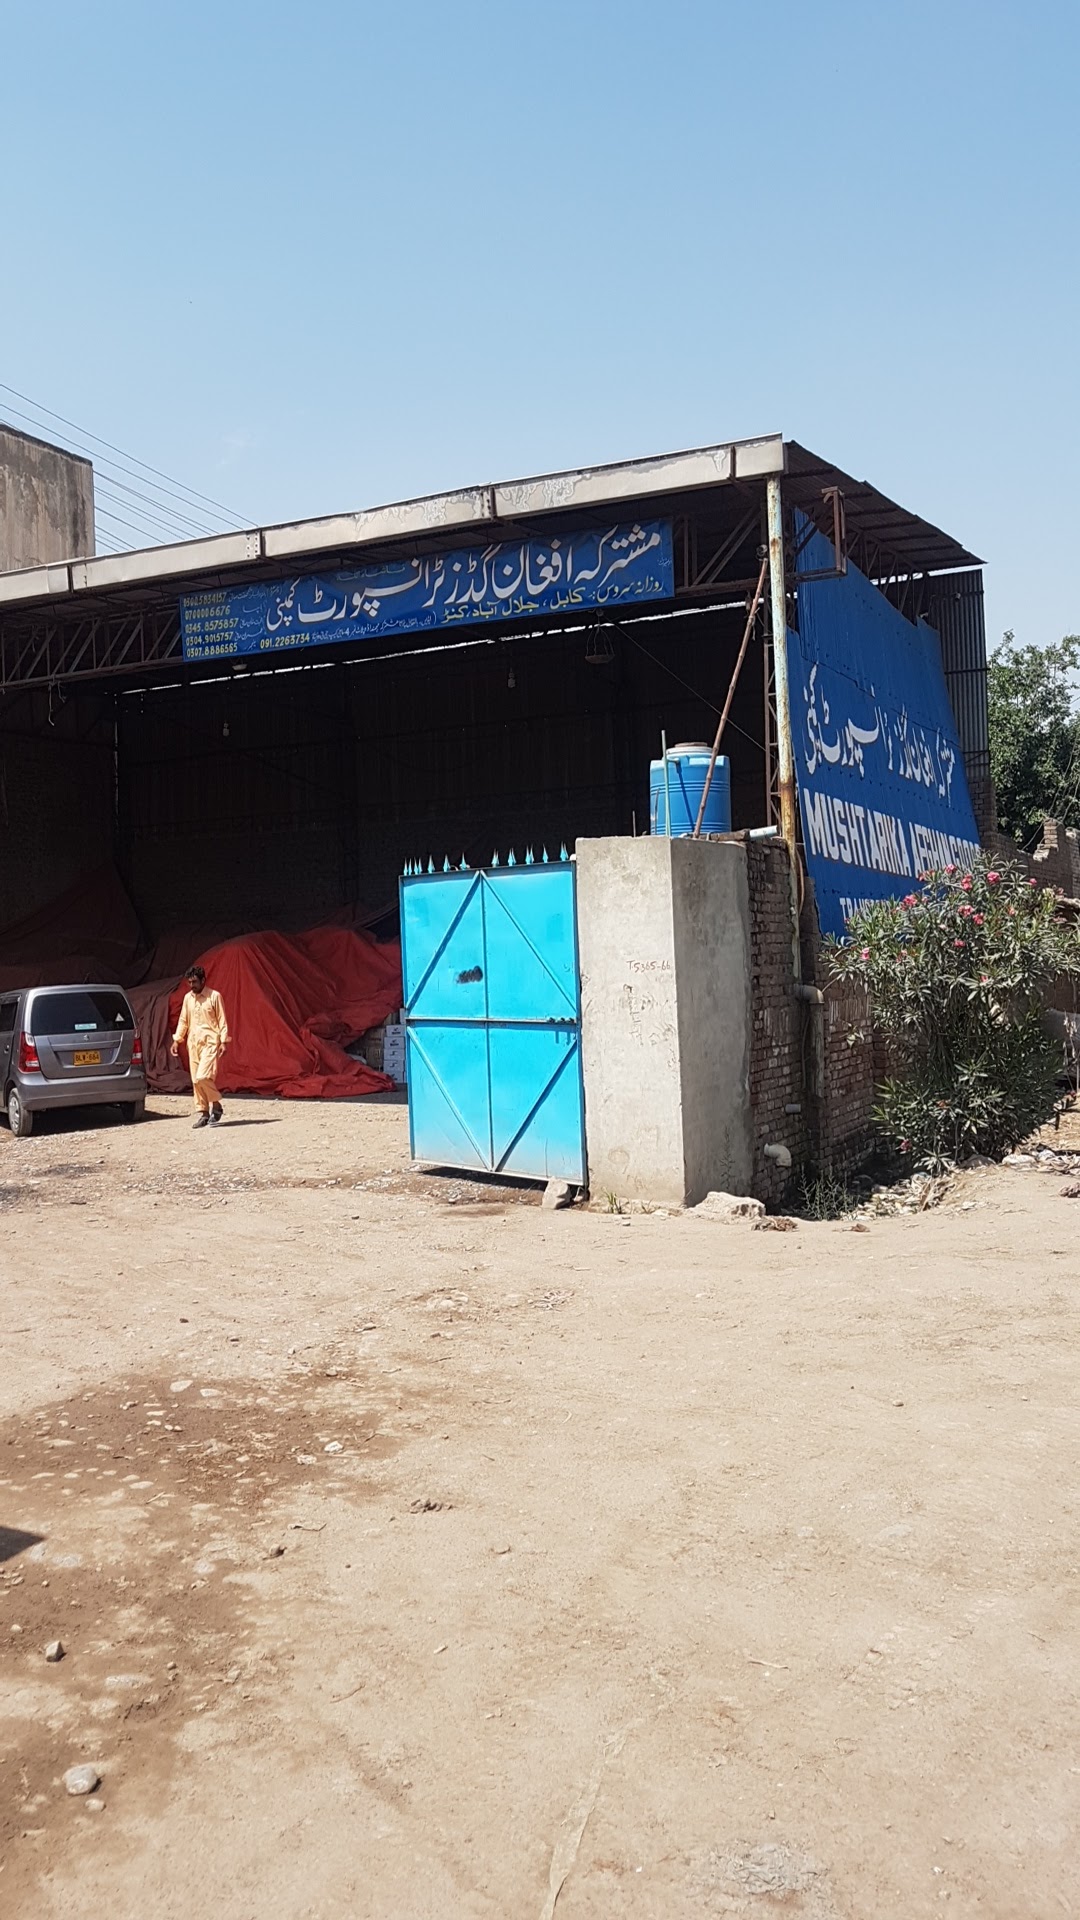 Mushtarka Afghan Goods tranaport company